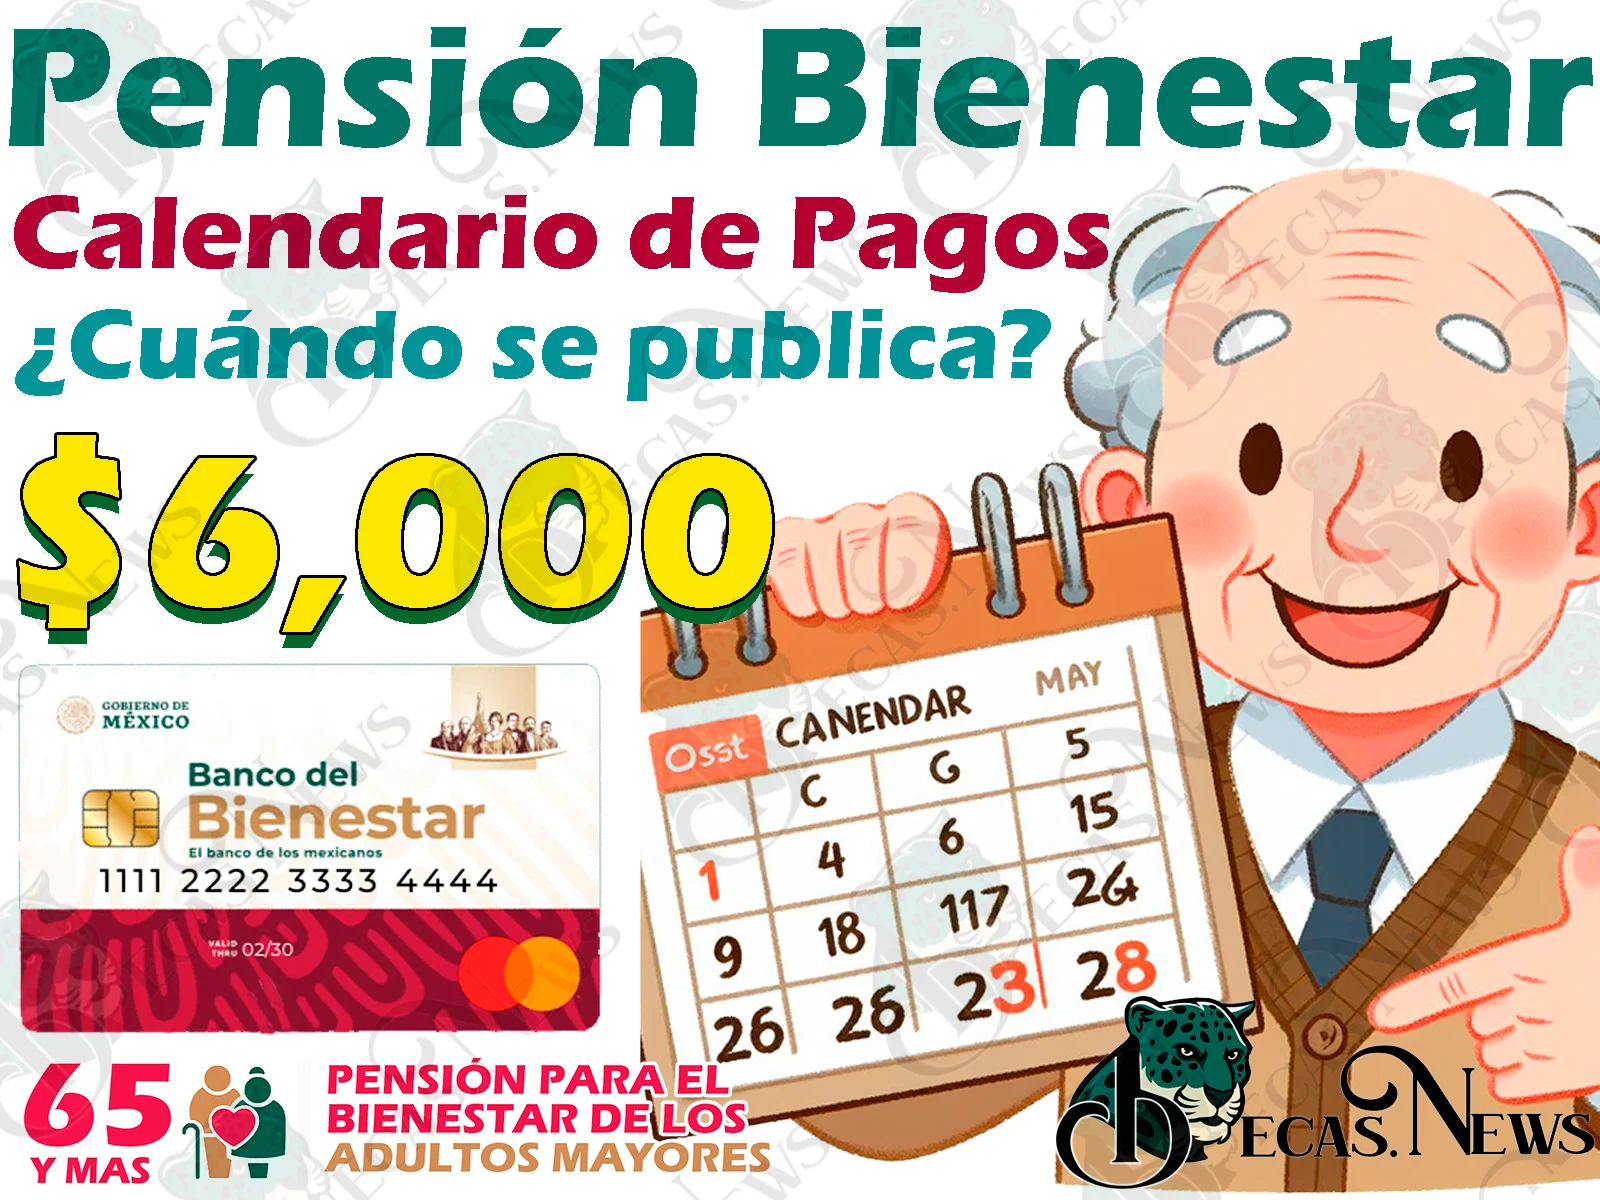 Calendario de pagos para la Pensión del Bienestar. ¿Cuándo será publicado?